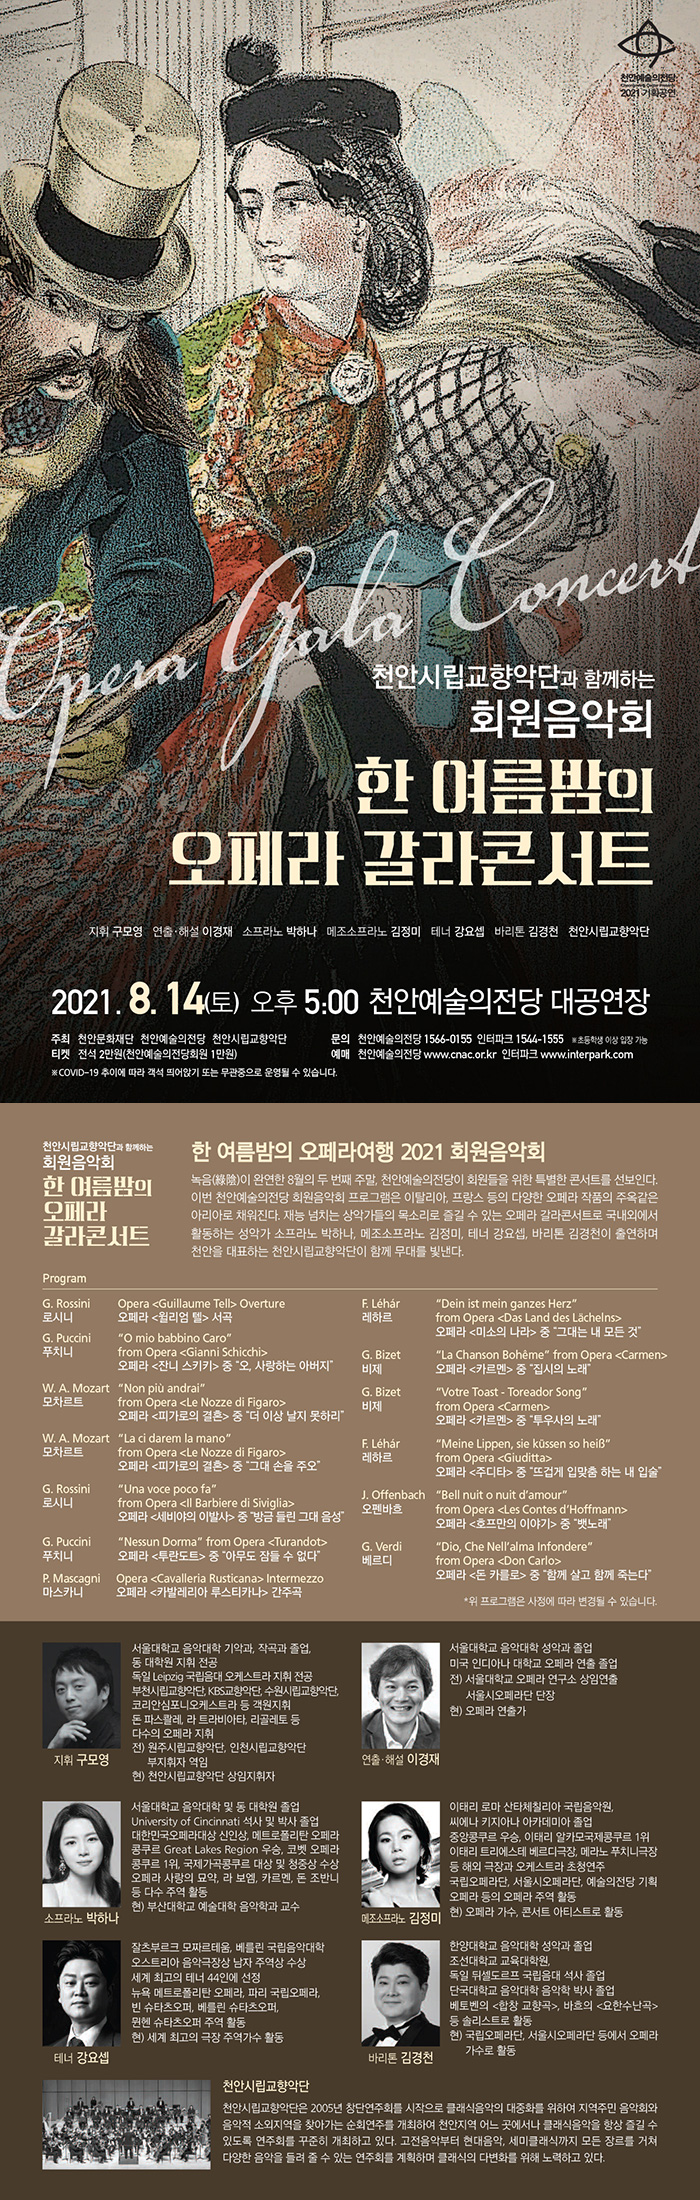 천안예술의전당 회원음악회- 천안시향과 함께하는 ‘한 여름밤의 오페라콘서트’